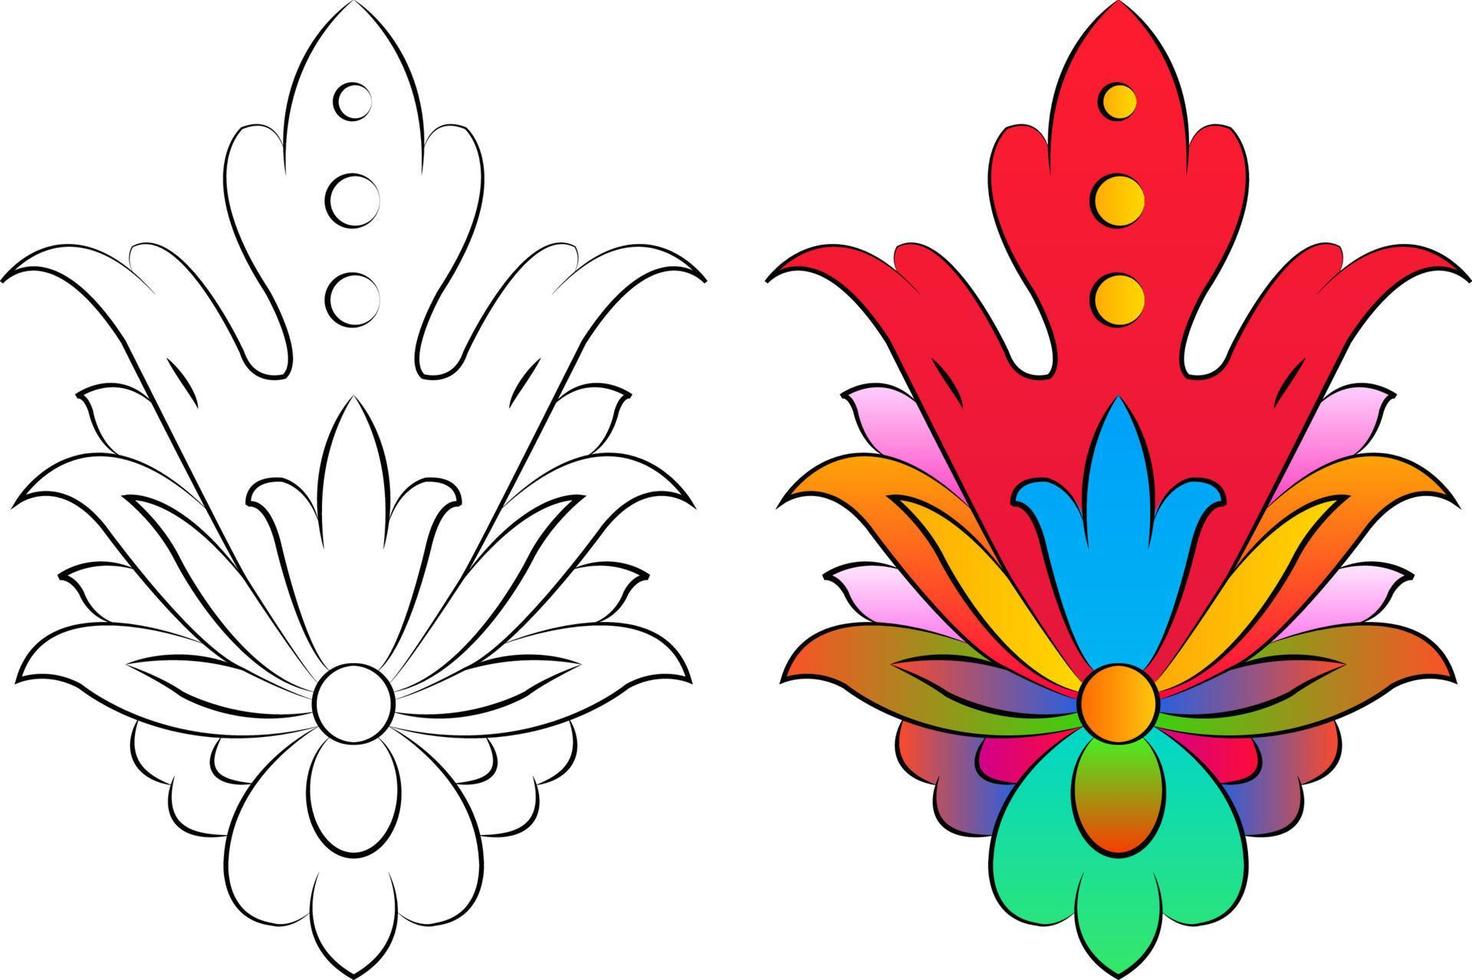 borduurwerk. geborduurde designelementen met bloemen en bladeren in vintage stijl op een witte achtergrond. voorraad vectorillustratie vector